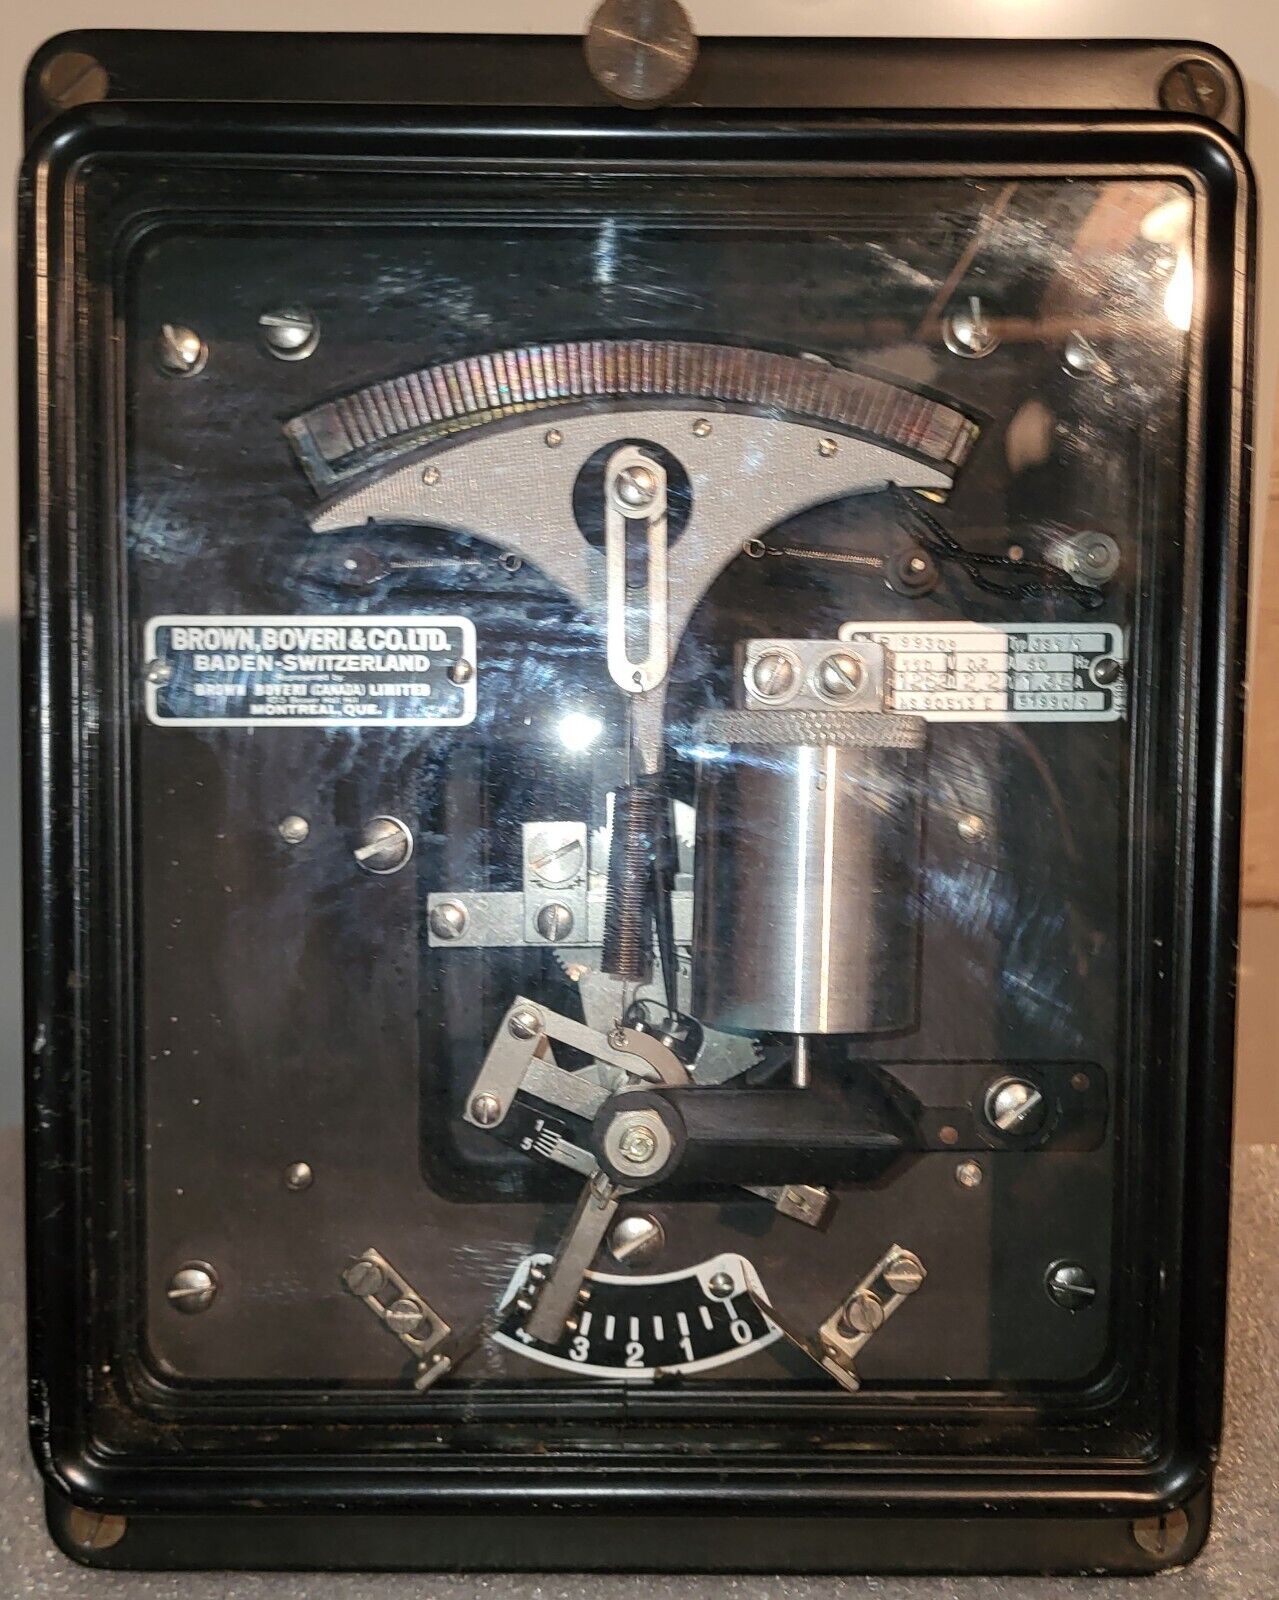 Vintage BROWN BOVERI &CO.LTD 1964 Voltage Regulator